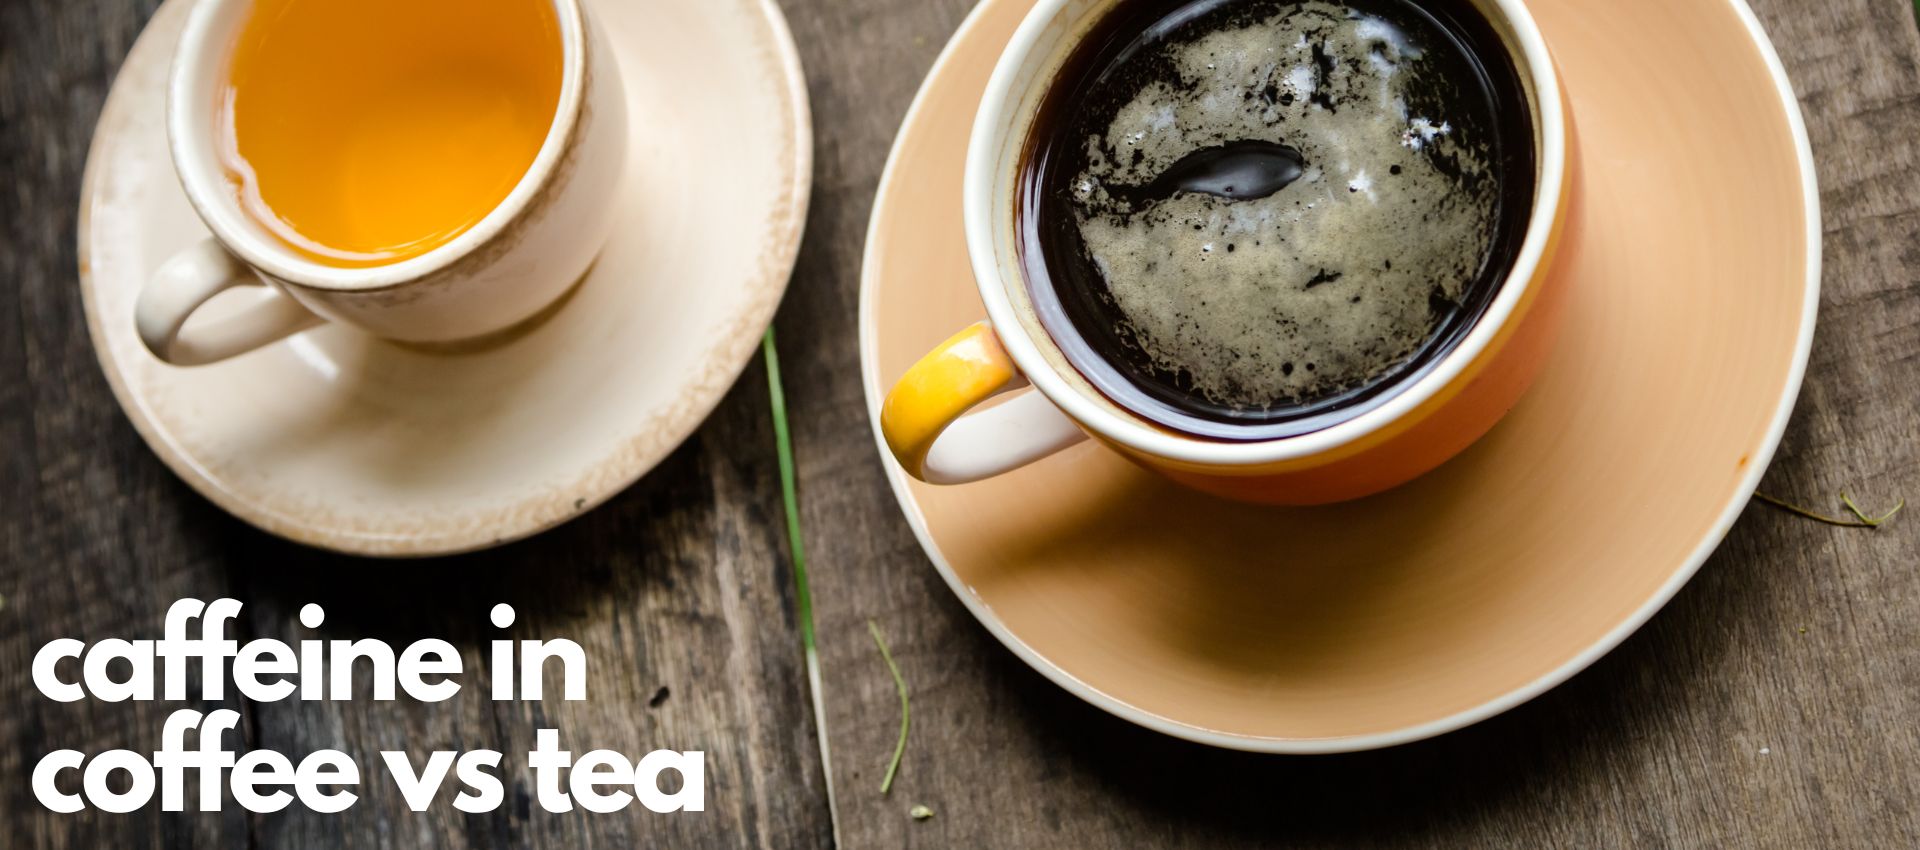 caffeine in coffee versus tea